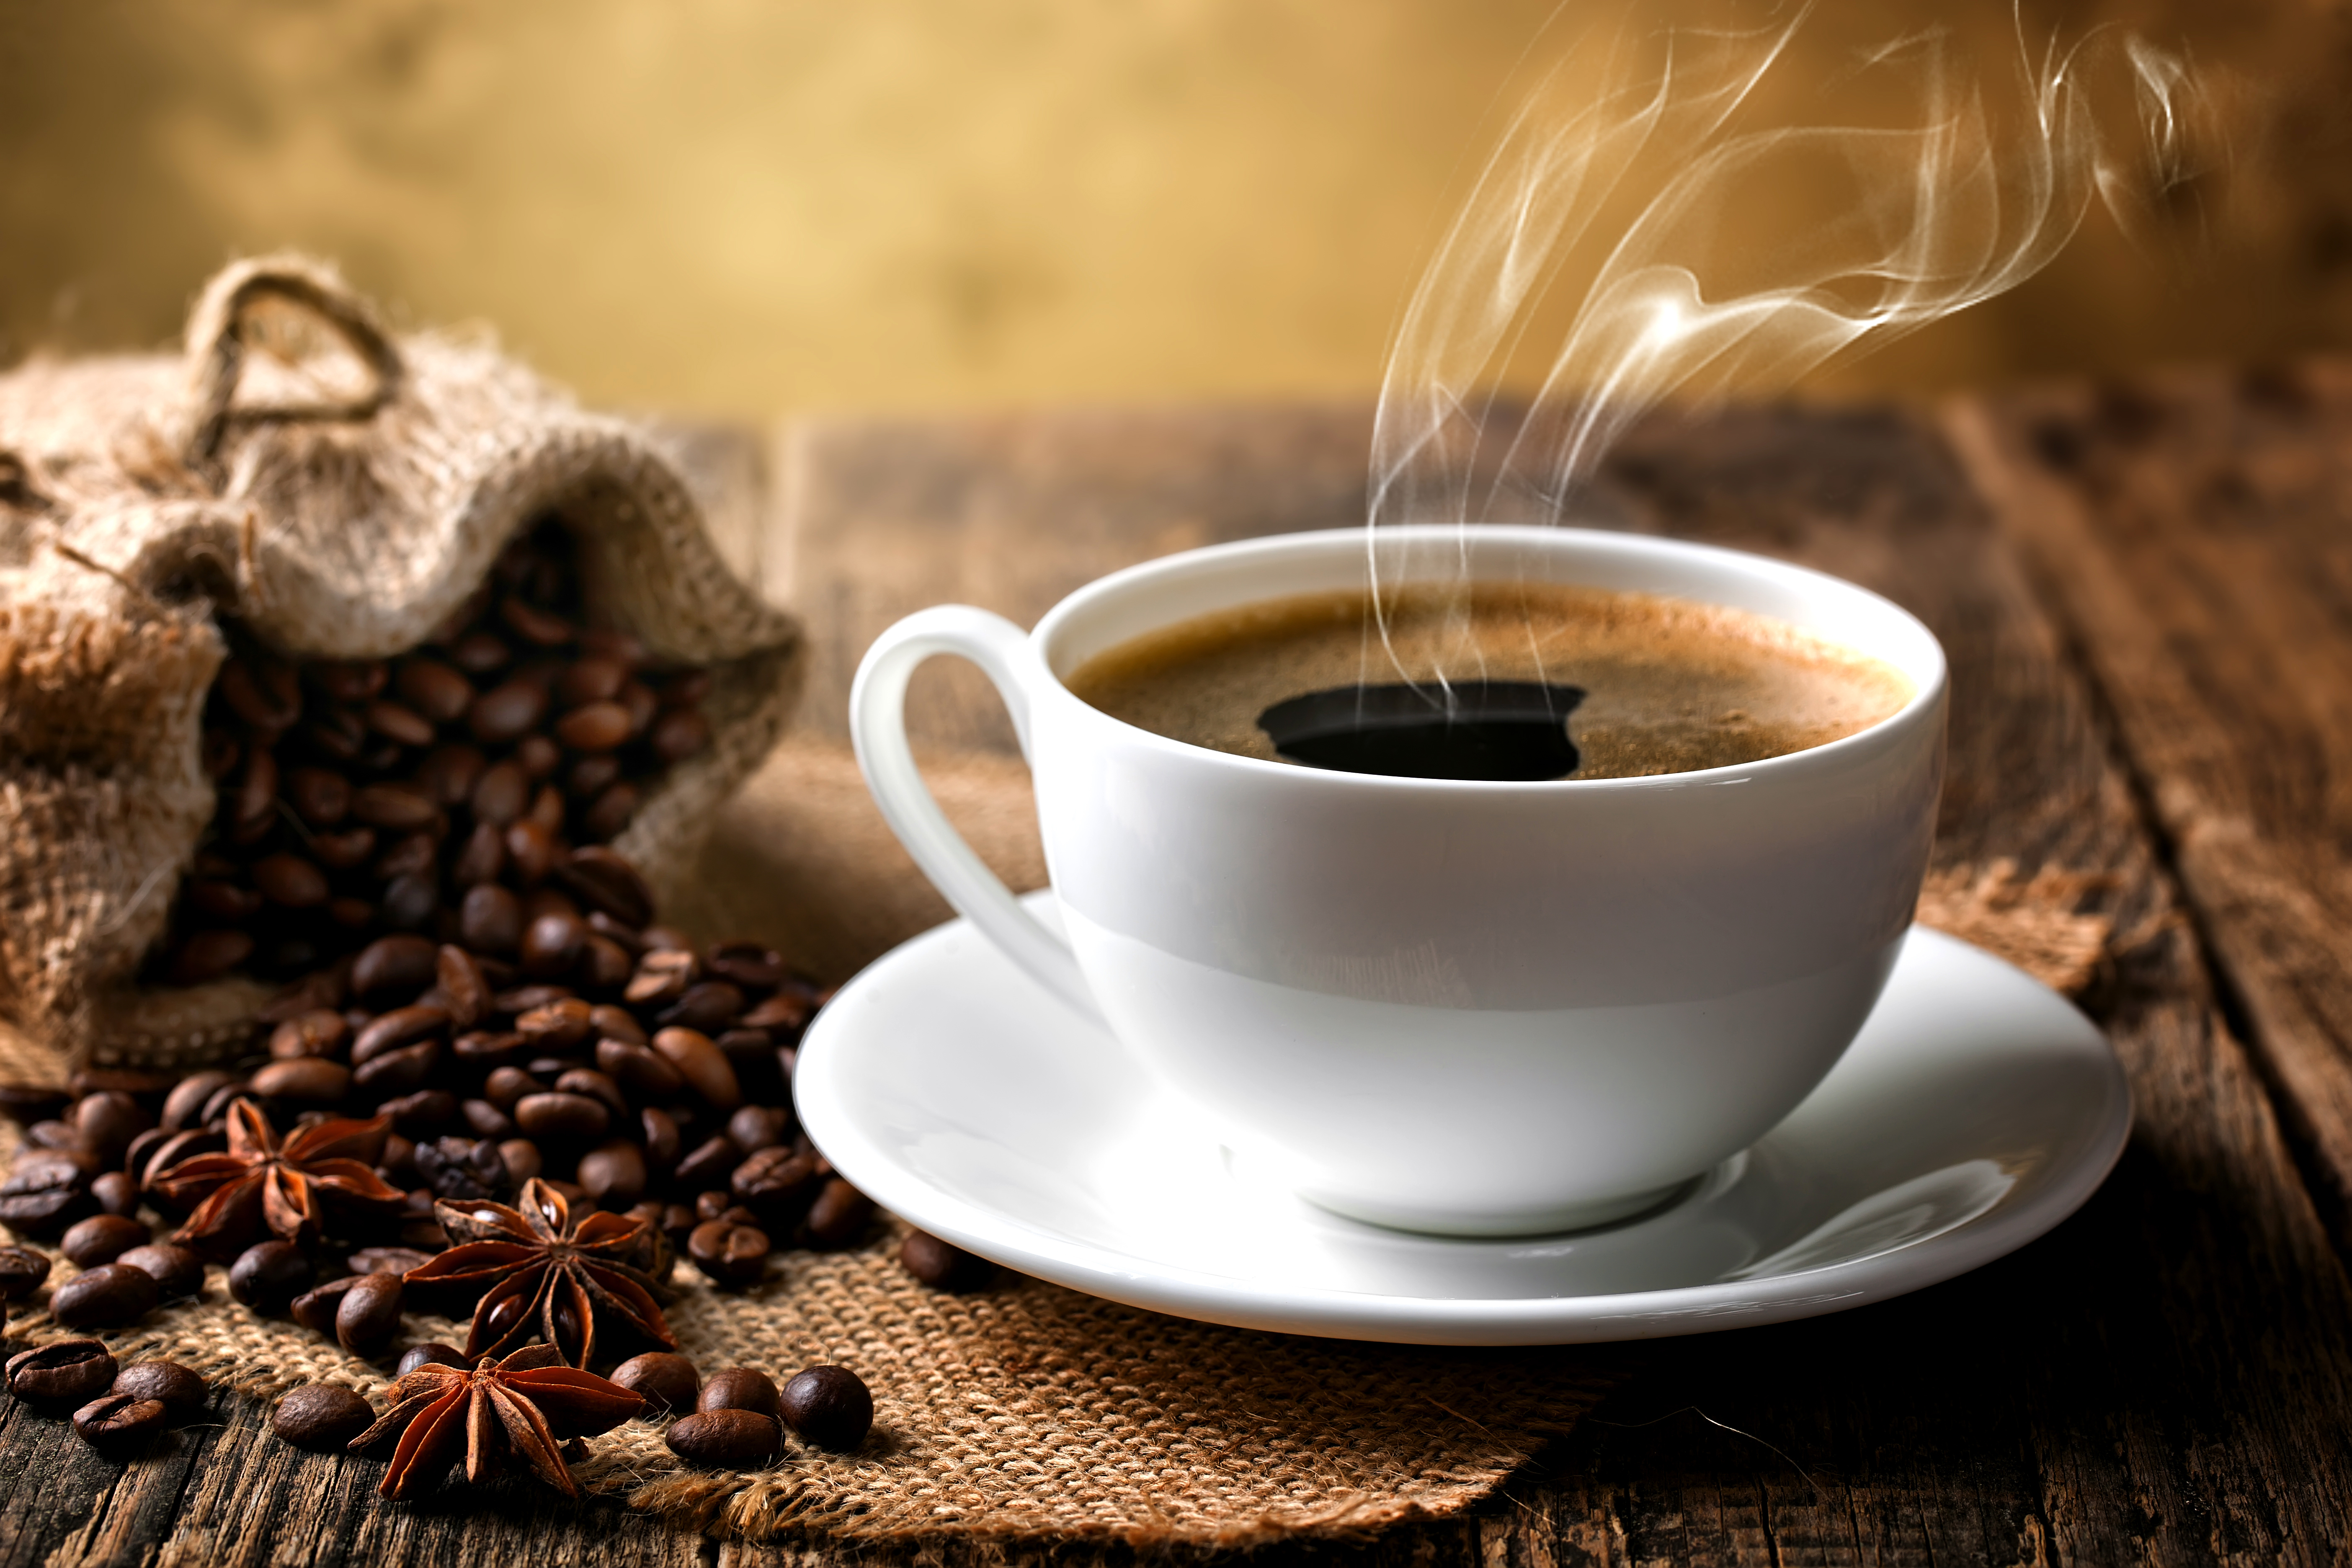 Cuántas tazas de café al día son demasiadas, según los expertos